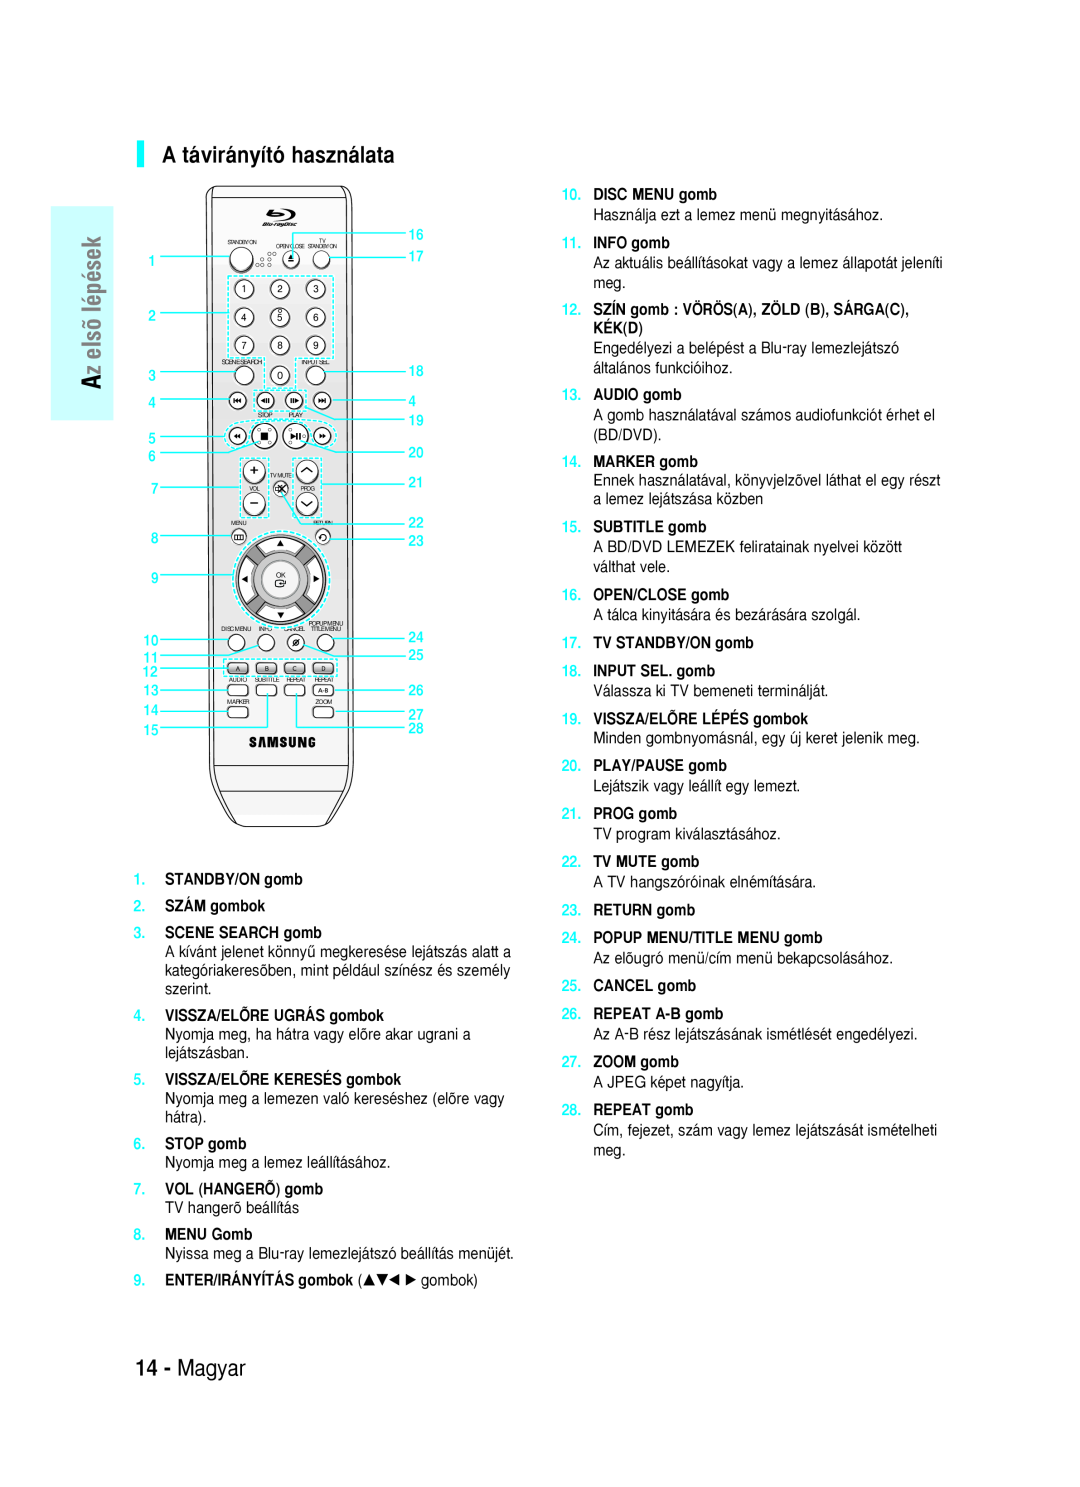 Samsung BD-P1000/XEO A távirányító használata, Magyar, DISC MENU gomb, INFO gomb, AUDIO gomb, MARKER gomb, SUBTITLE gomb 